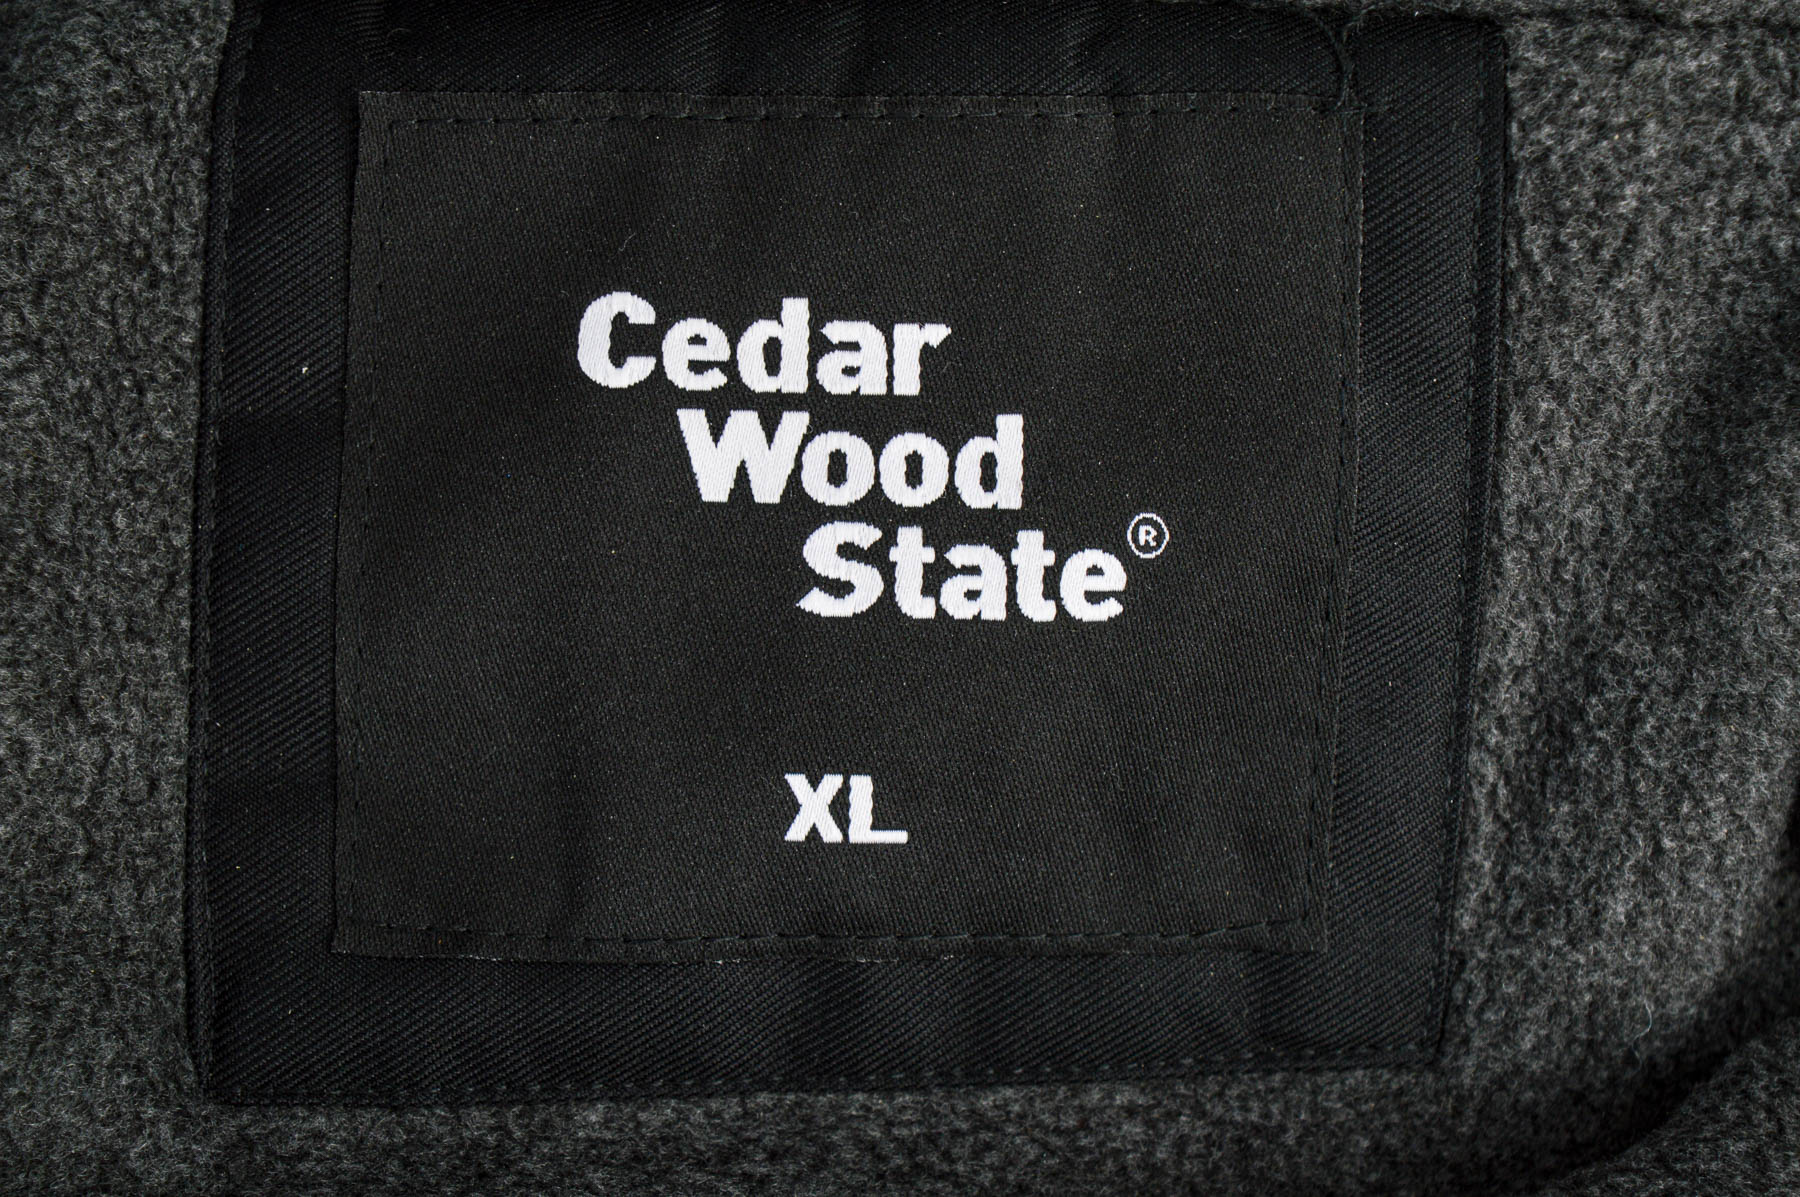 Cedar wood state jacket | in Swinton, Manchester | Gumtree